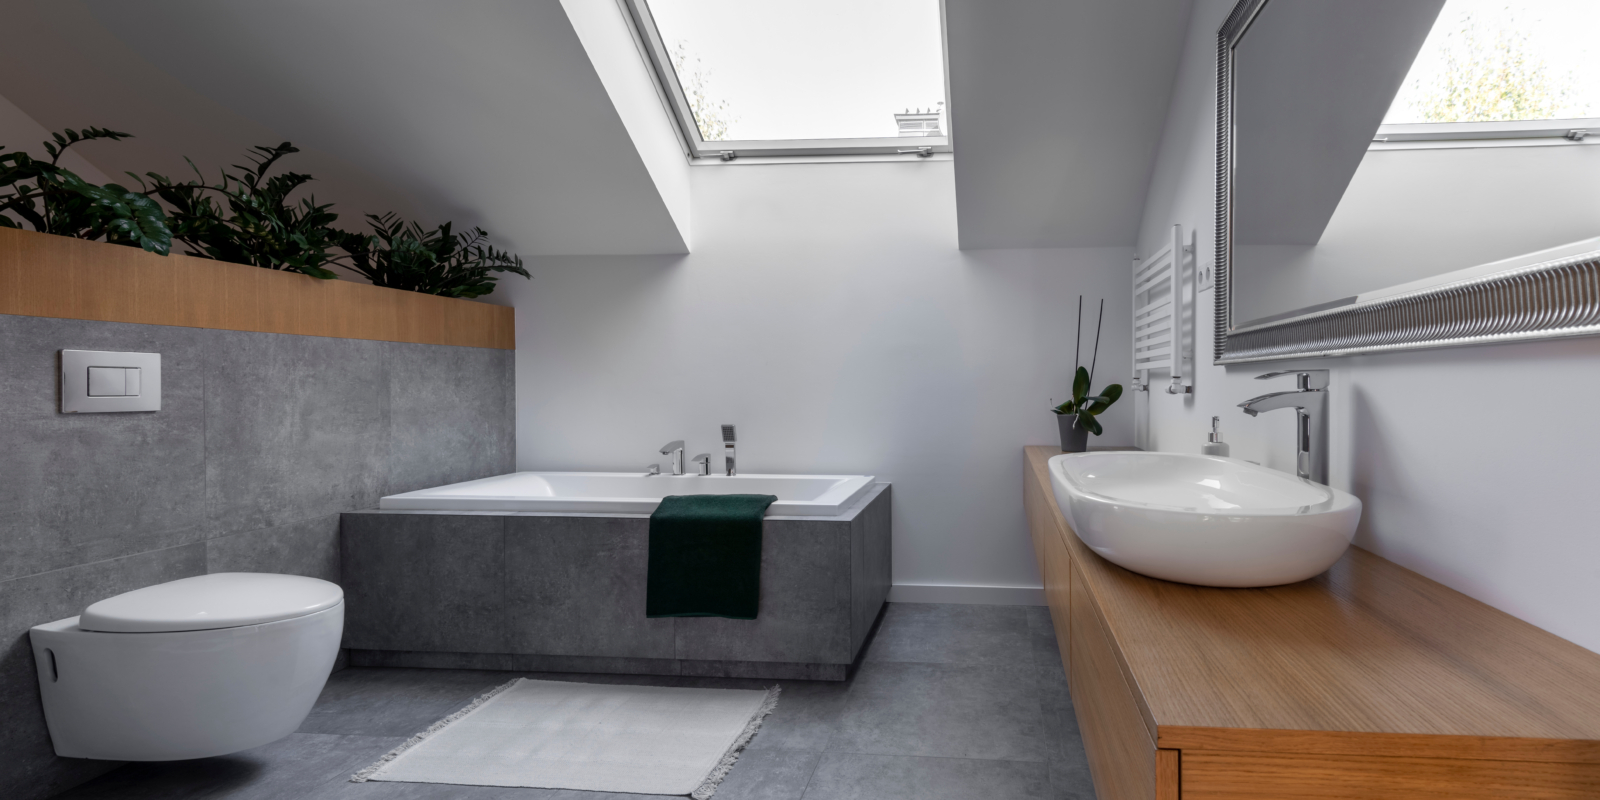 Modernes Badezimmer, Unterschränke aus Holz, graue Badezimmerfliesen